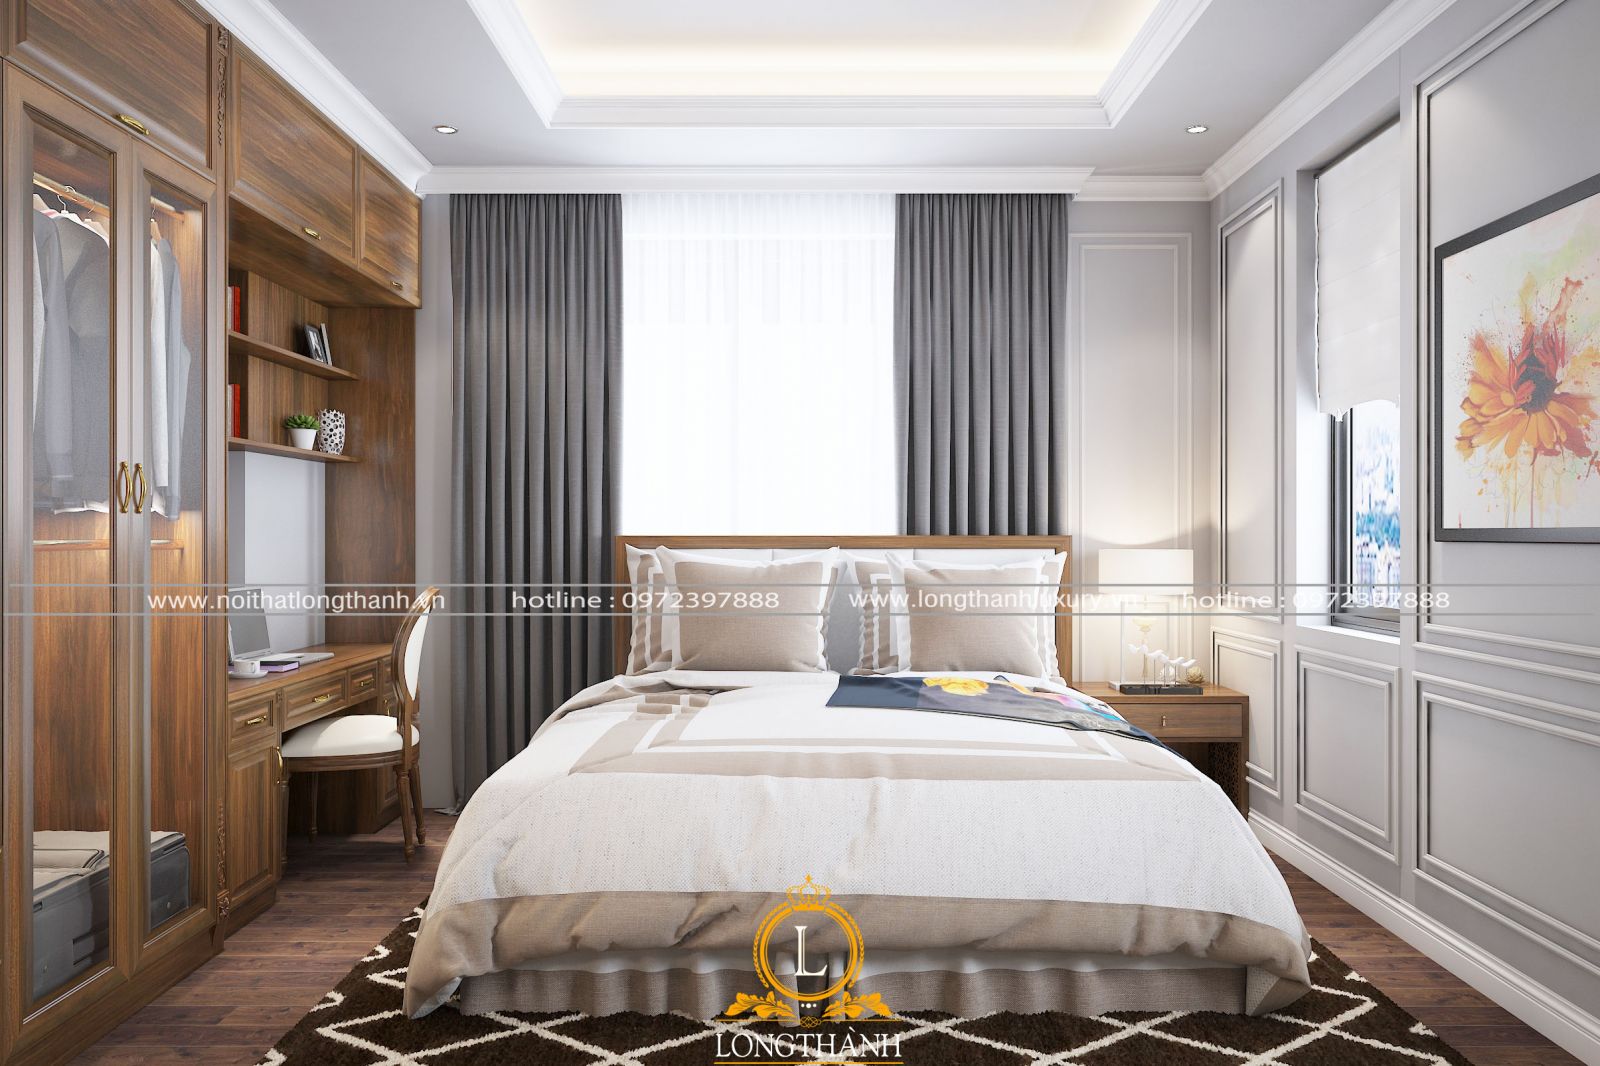 Mẫu phòng ngủ hiện đại đẹp cho phòng ngủ rộng